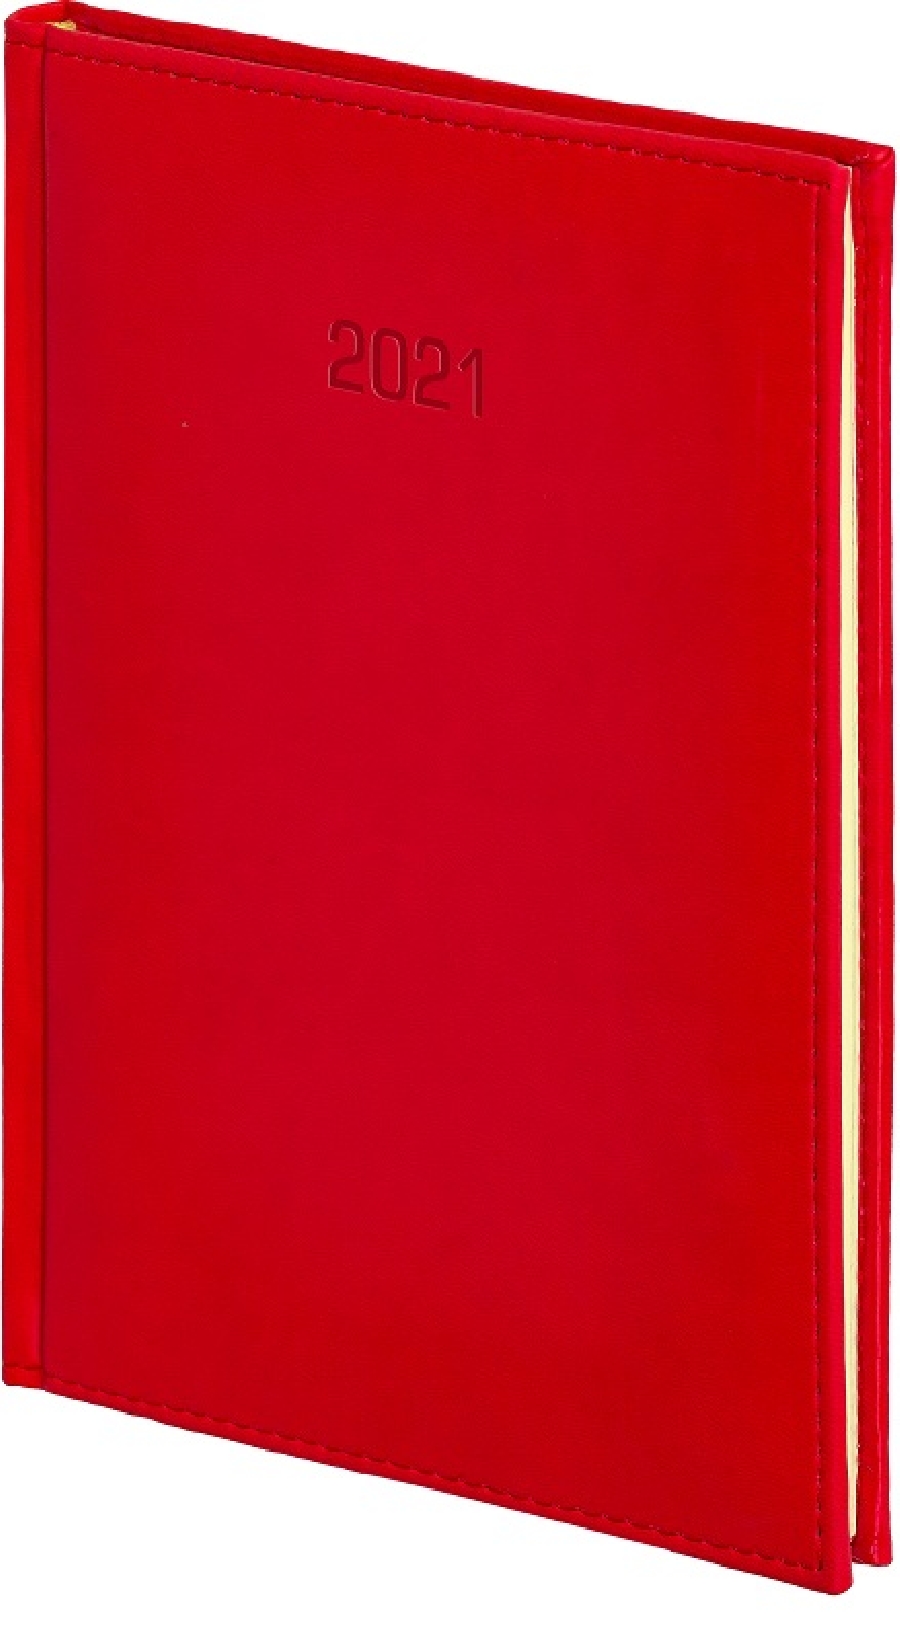 Kalendarz A5, Vivella, tygodniowy z notesem Czerwony 2023 21a5t026b-czerwony